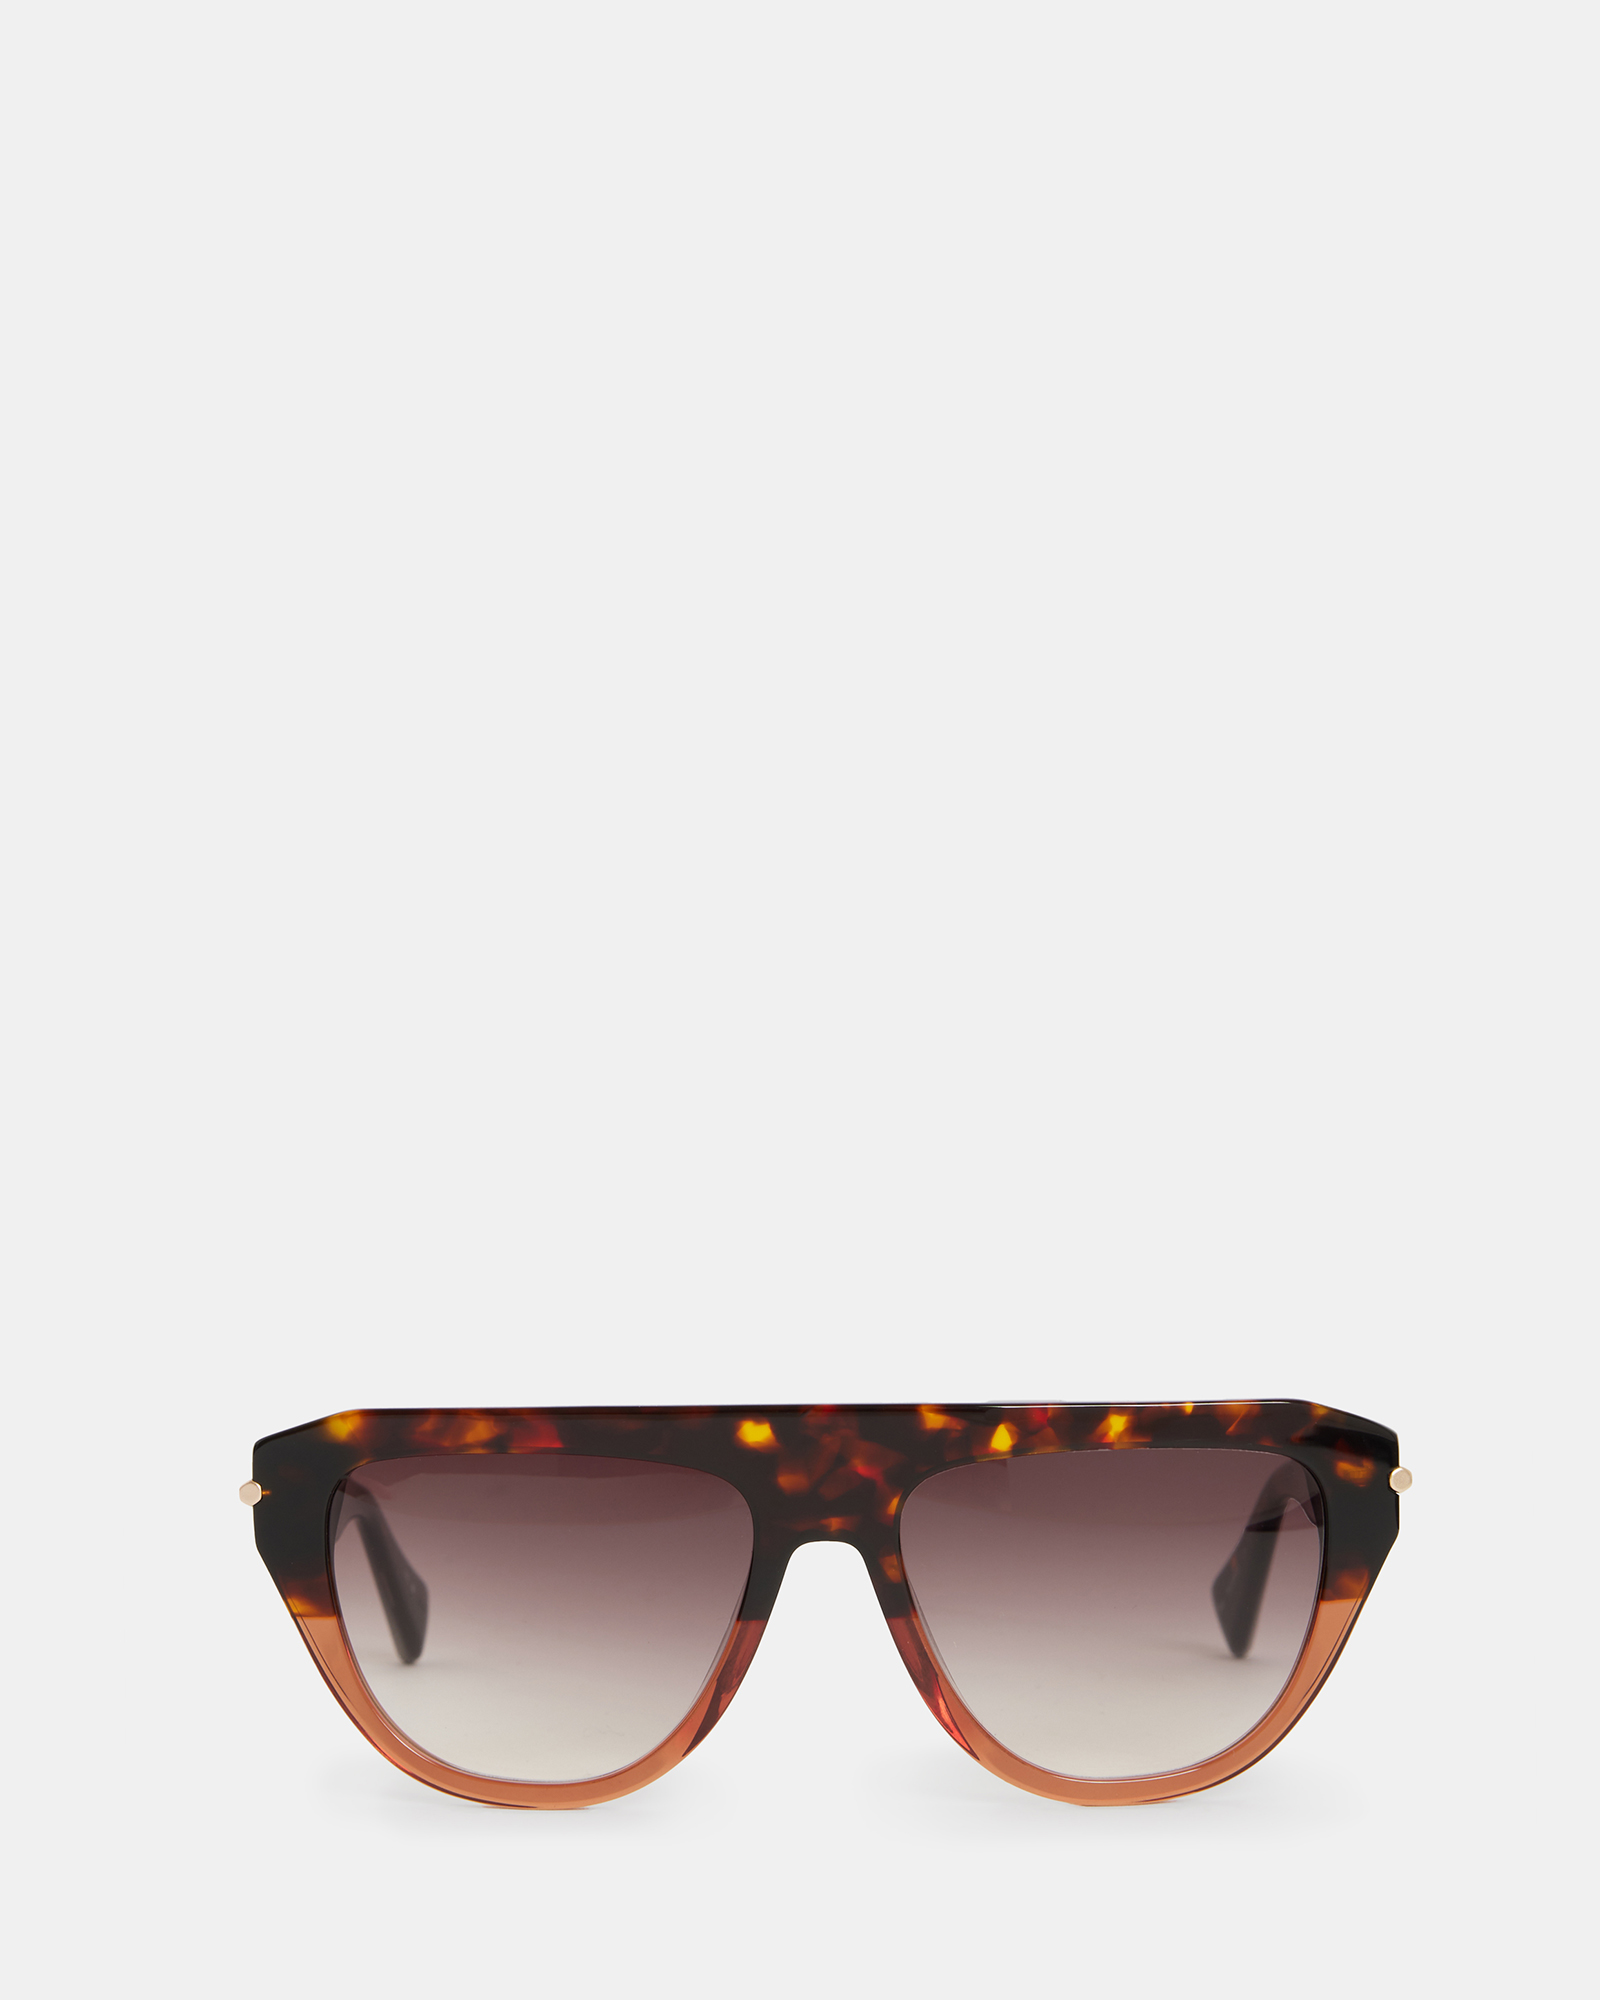 AllSaints Joy Sunglasses,, Brown, Size: One Size